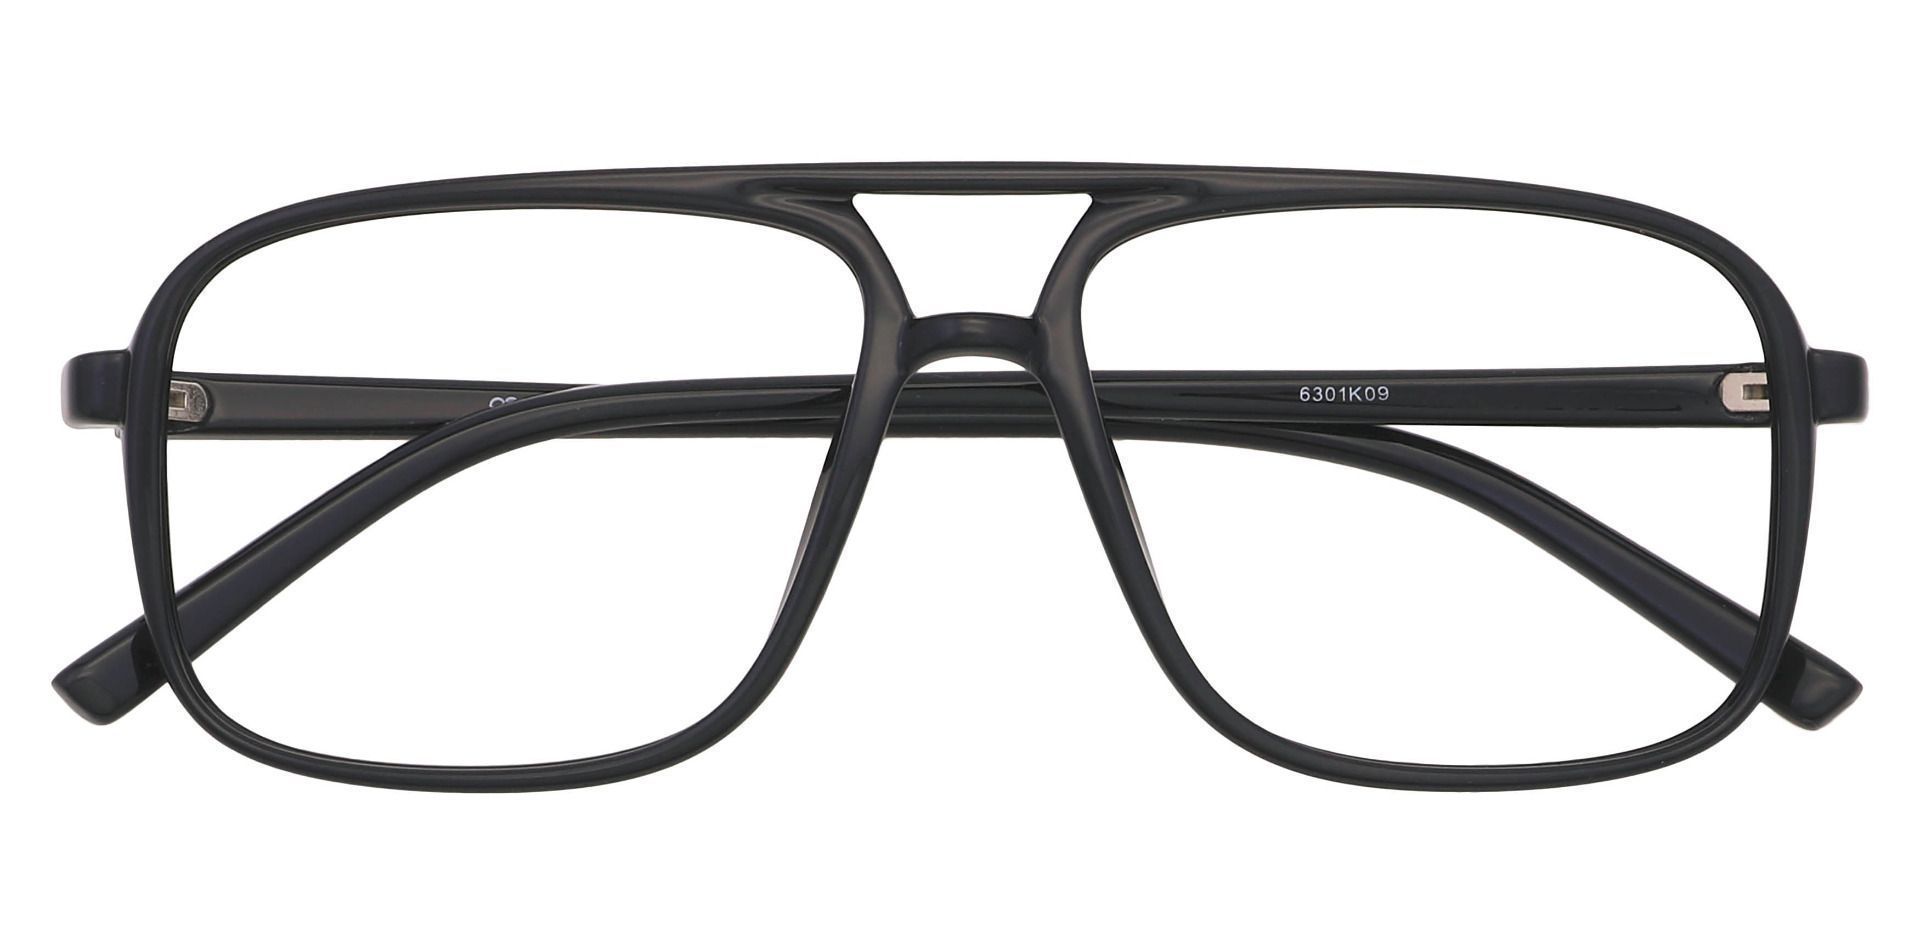 Atwood Aviator Prescription Glasses Black Men S Eyeglasses Payne Glasses